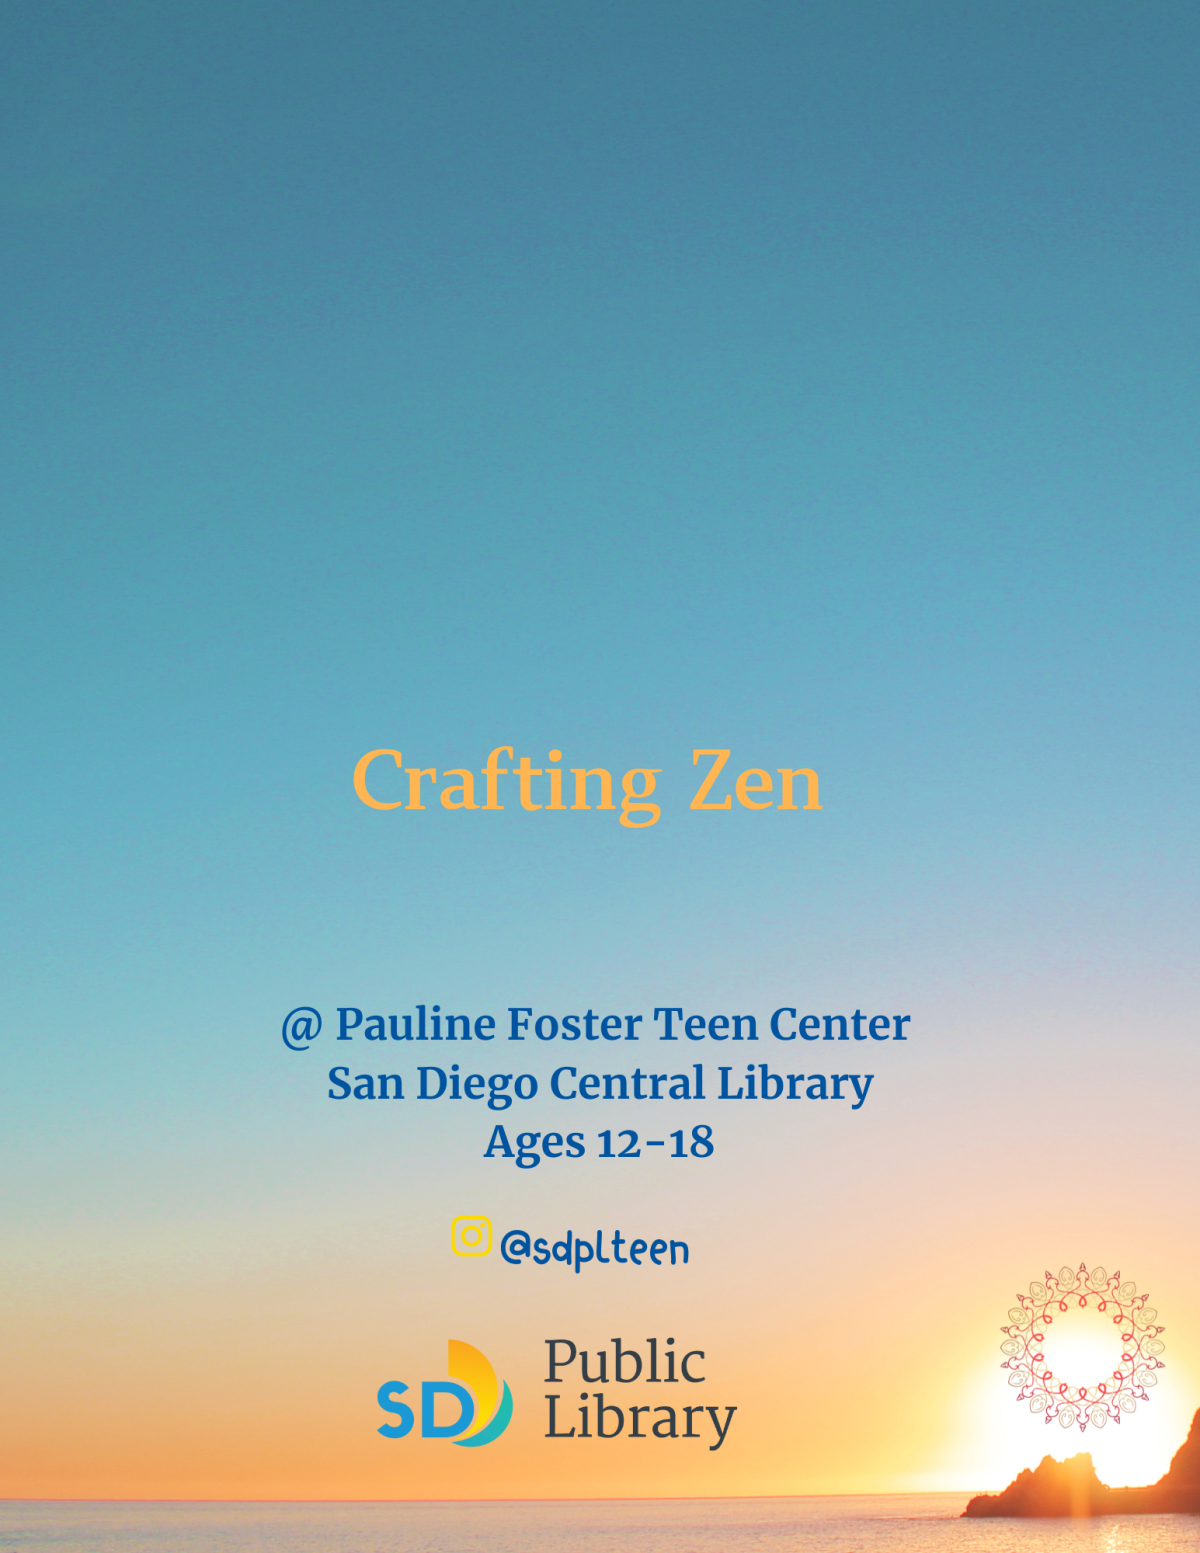 Crafting Zen flyer.